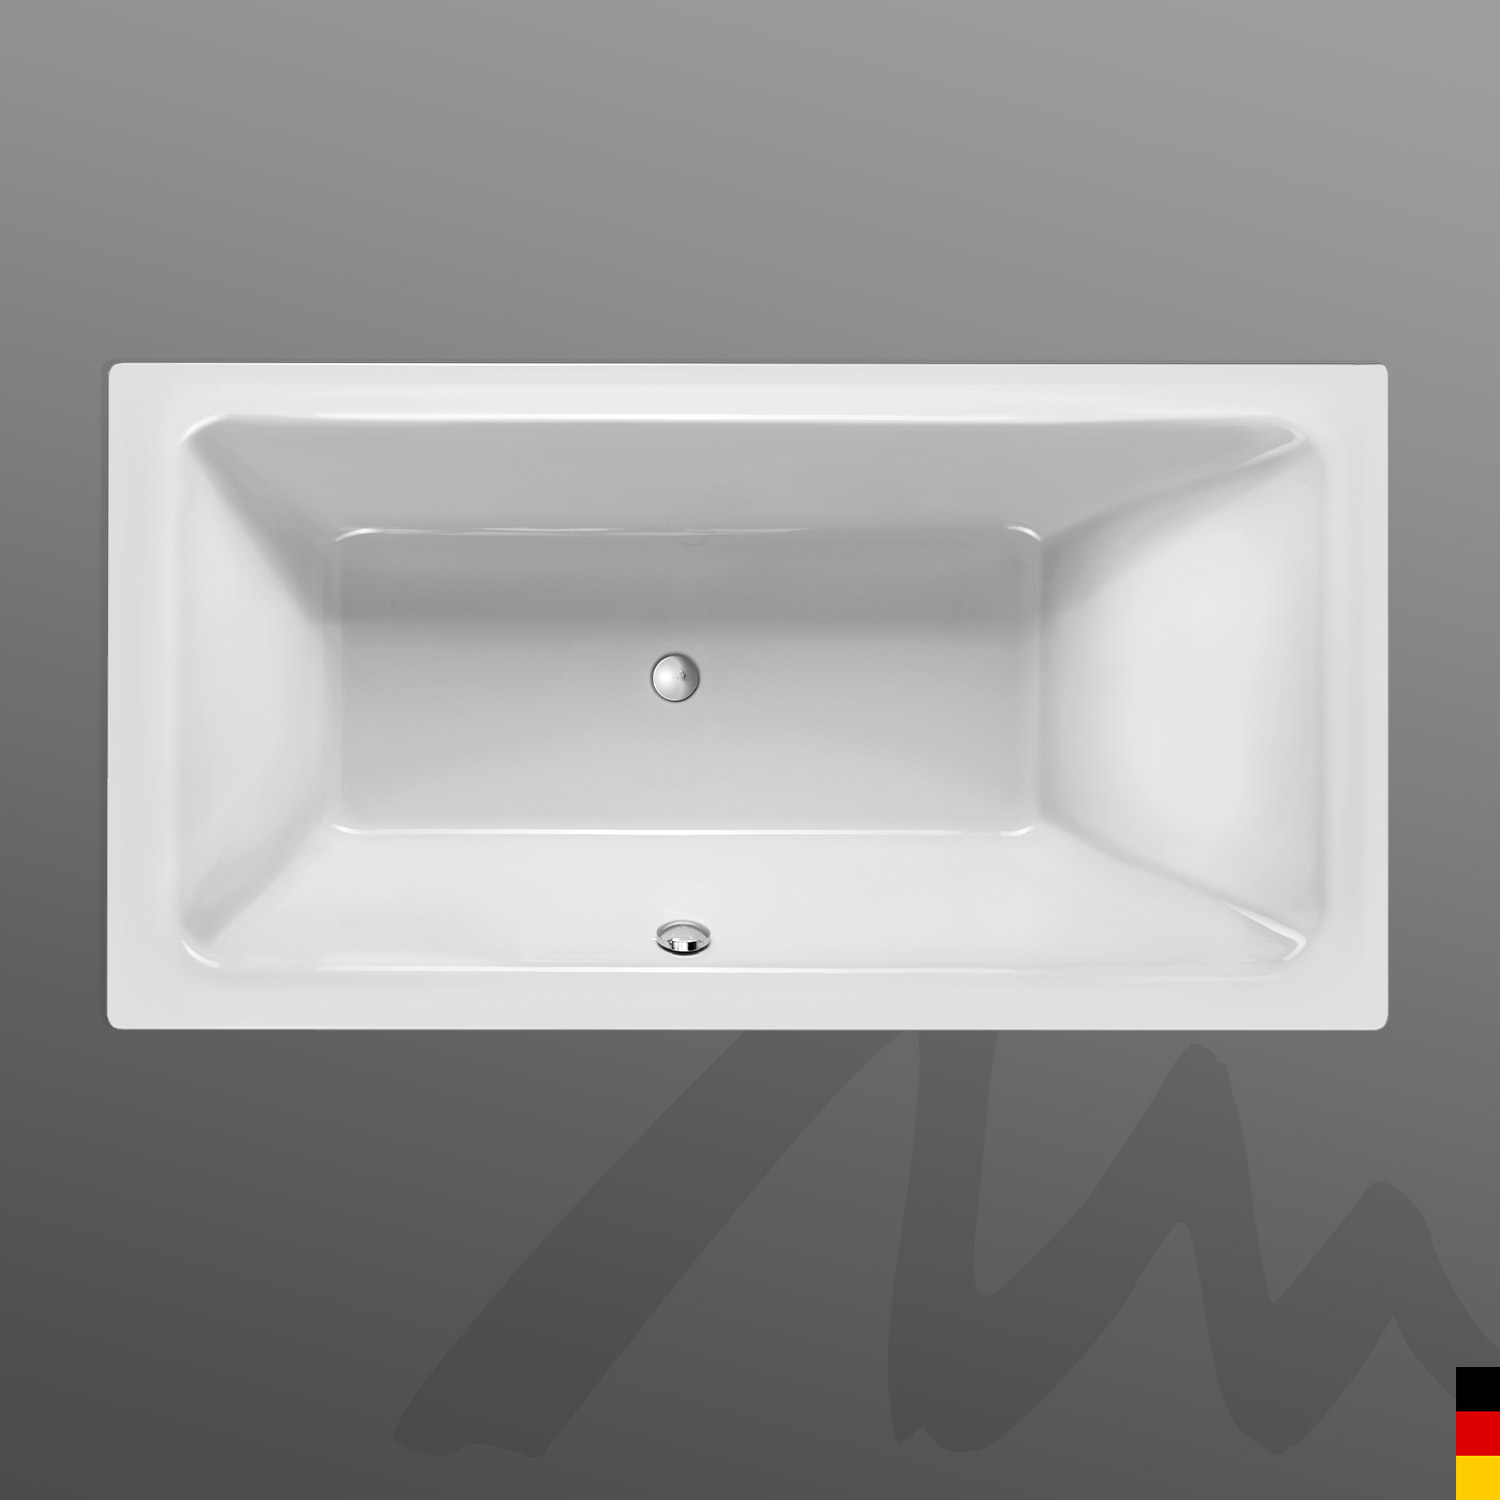 Mauersberger Badewanne Rechteck Convexa 190/100  190x100x45  Farbe:Farbgruppe 2